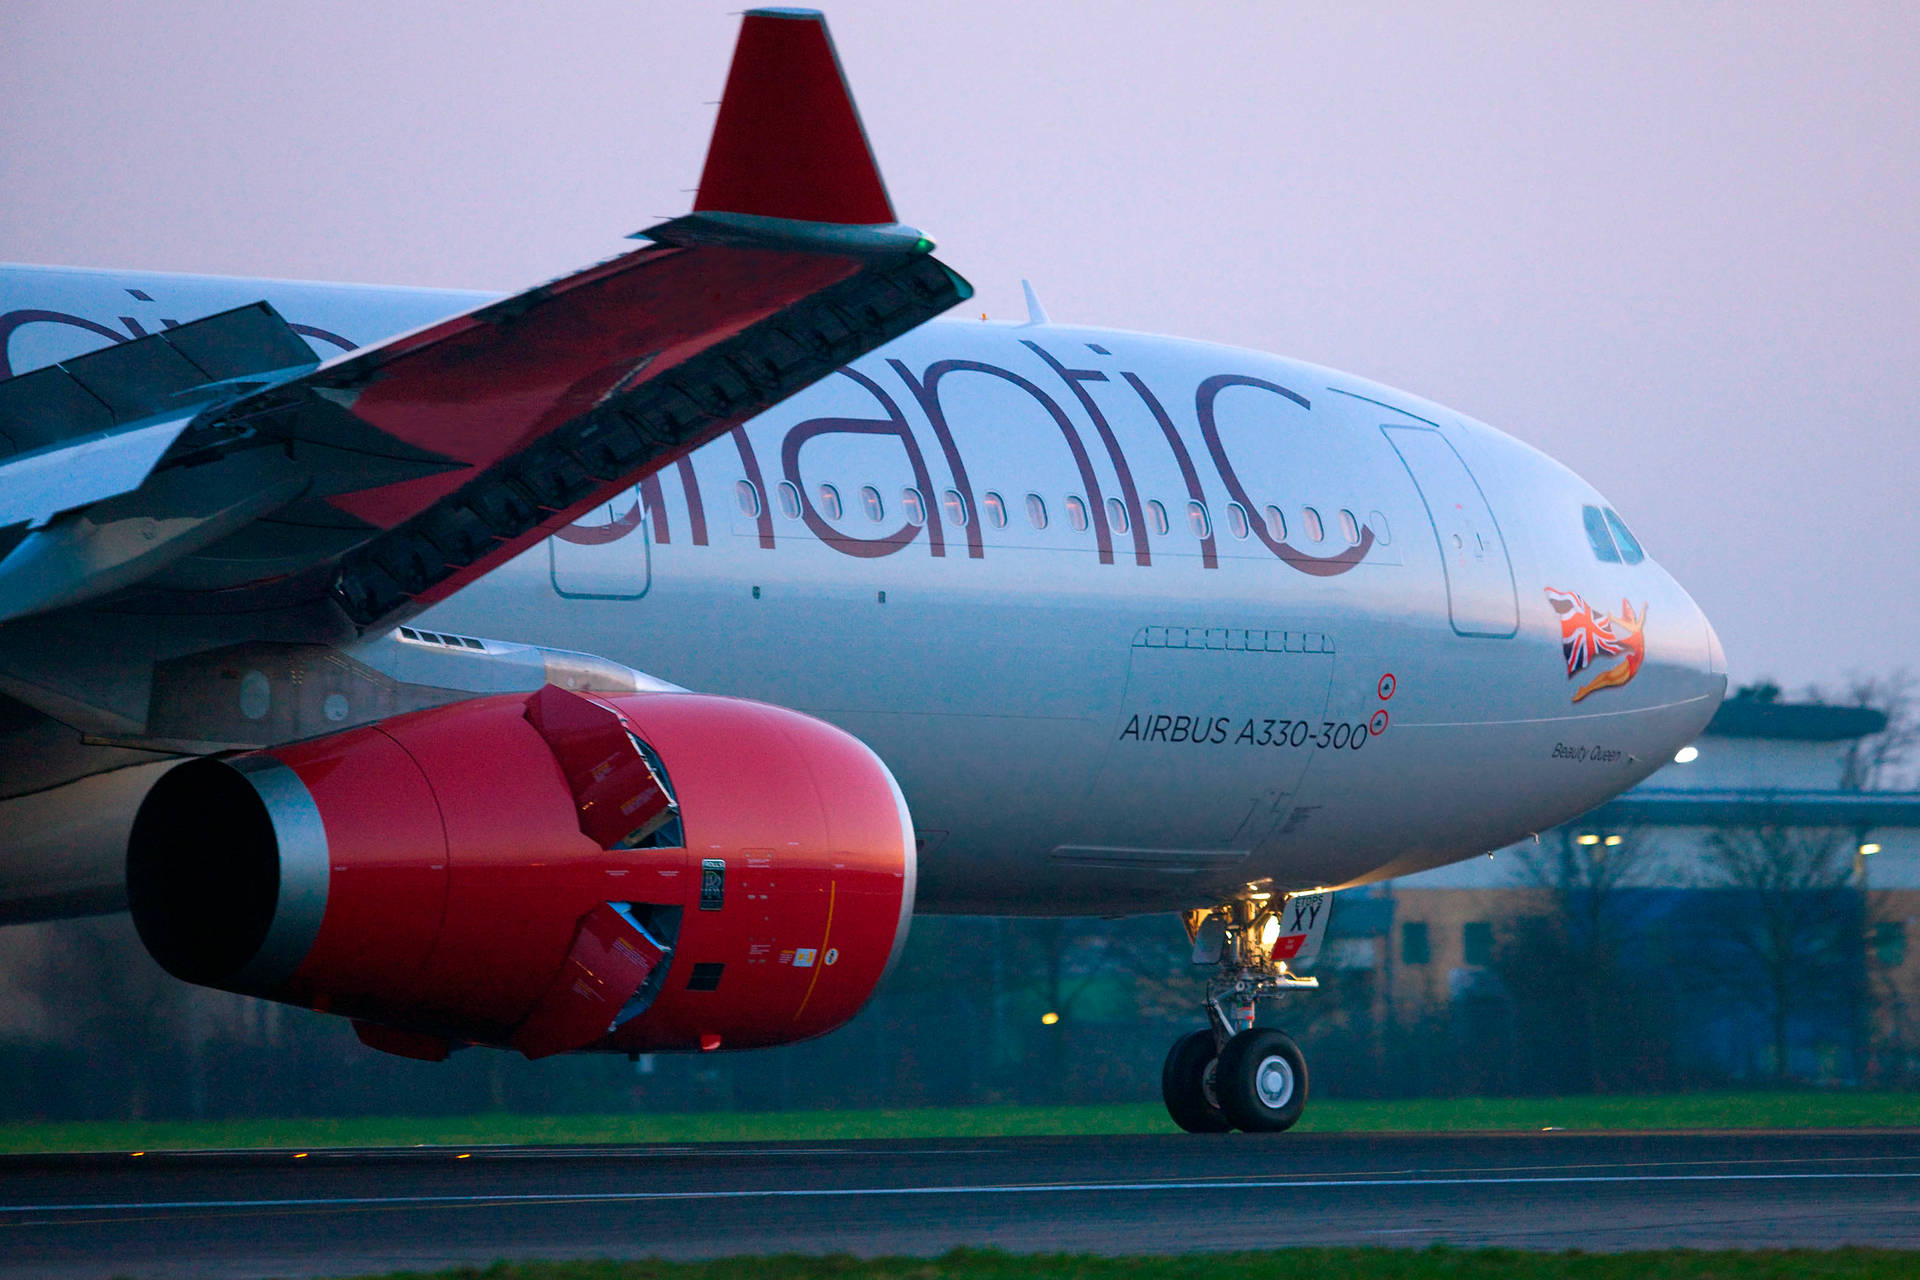 Närbildpå Virgin Atlantic-flygplan. Wallpaper